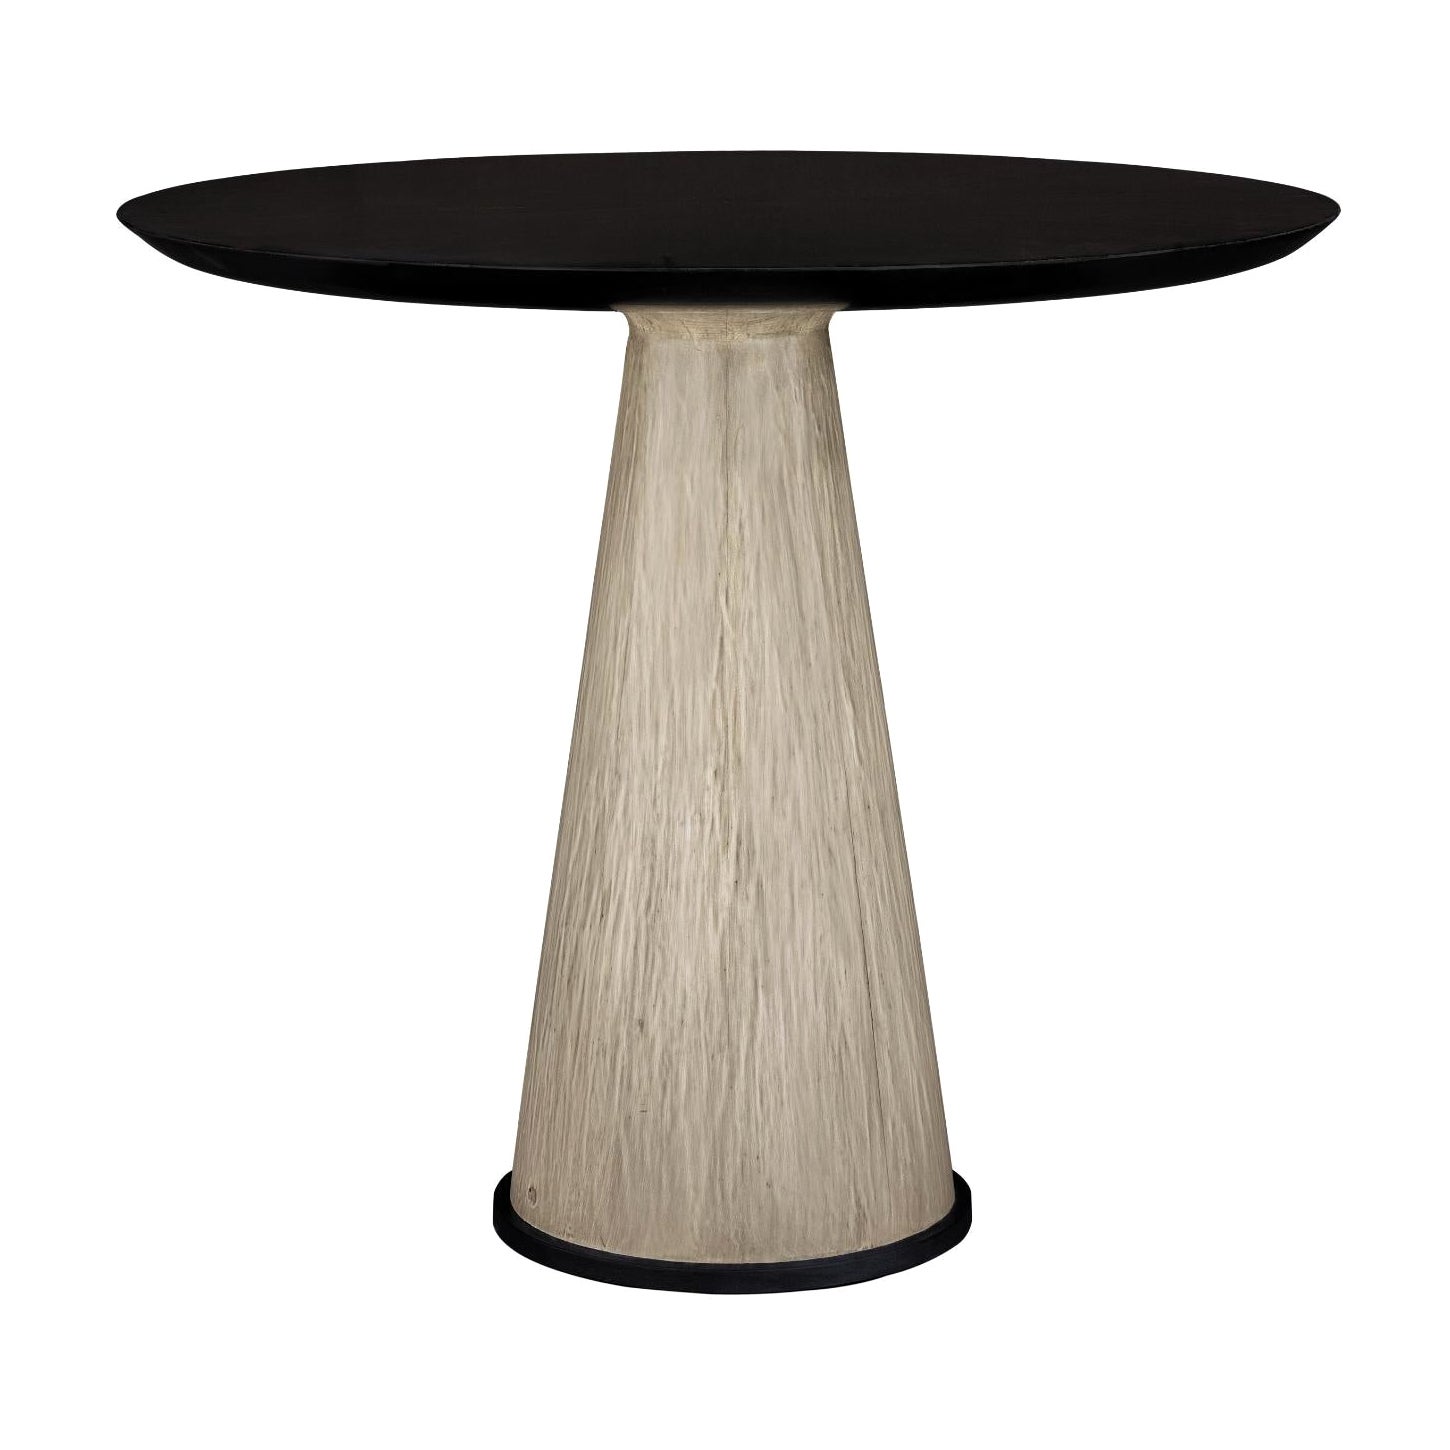 Table de salle à manger circulaire en bois avec base conique contrastée